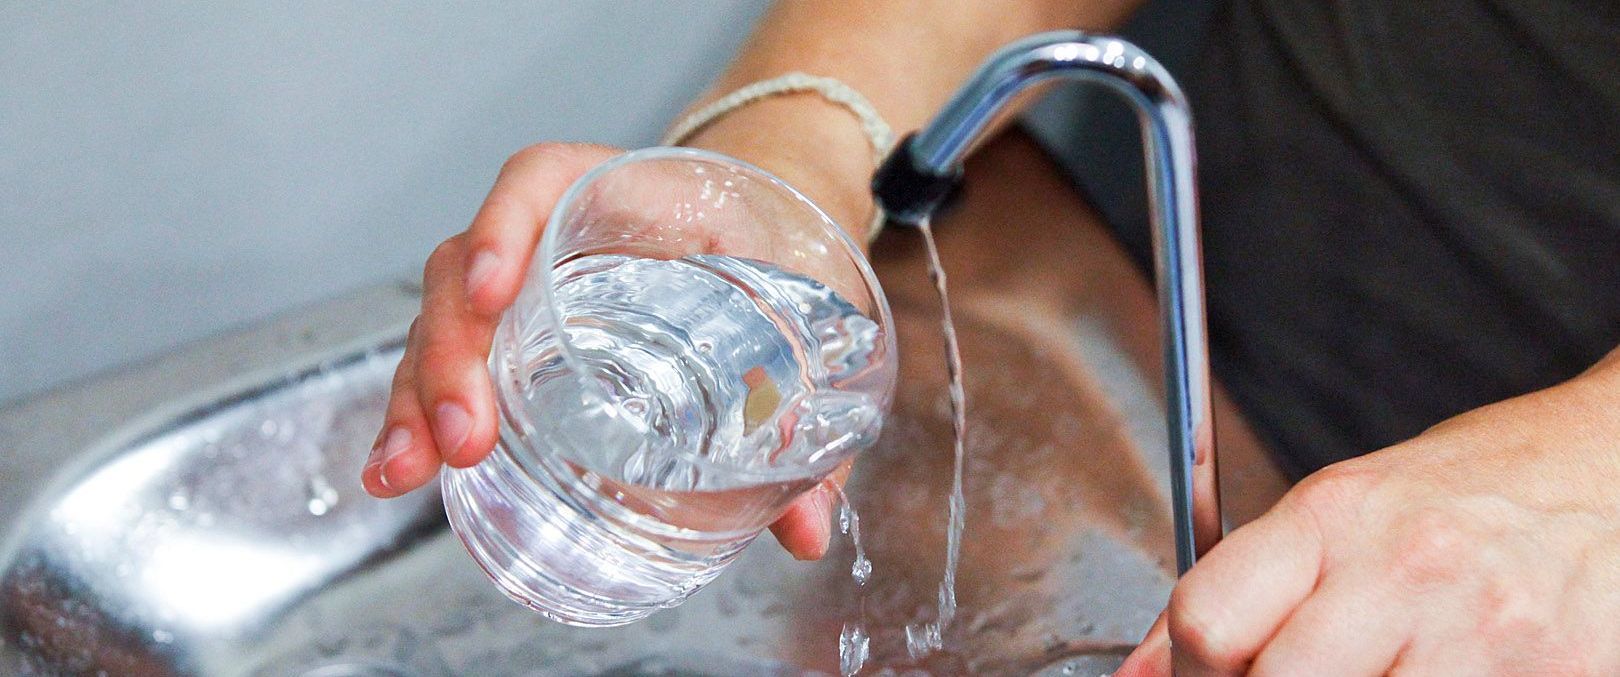 Glas gevuld met kraanwater / Kiezen van waterzuiveringsinstallatie Van Hall Innovations